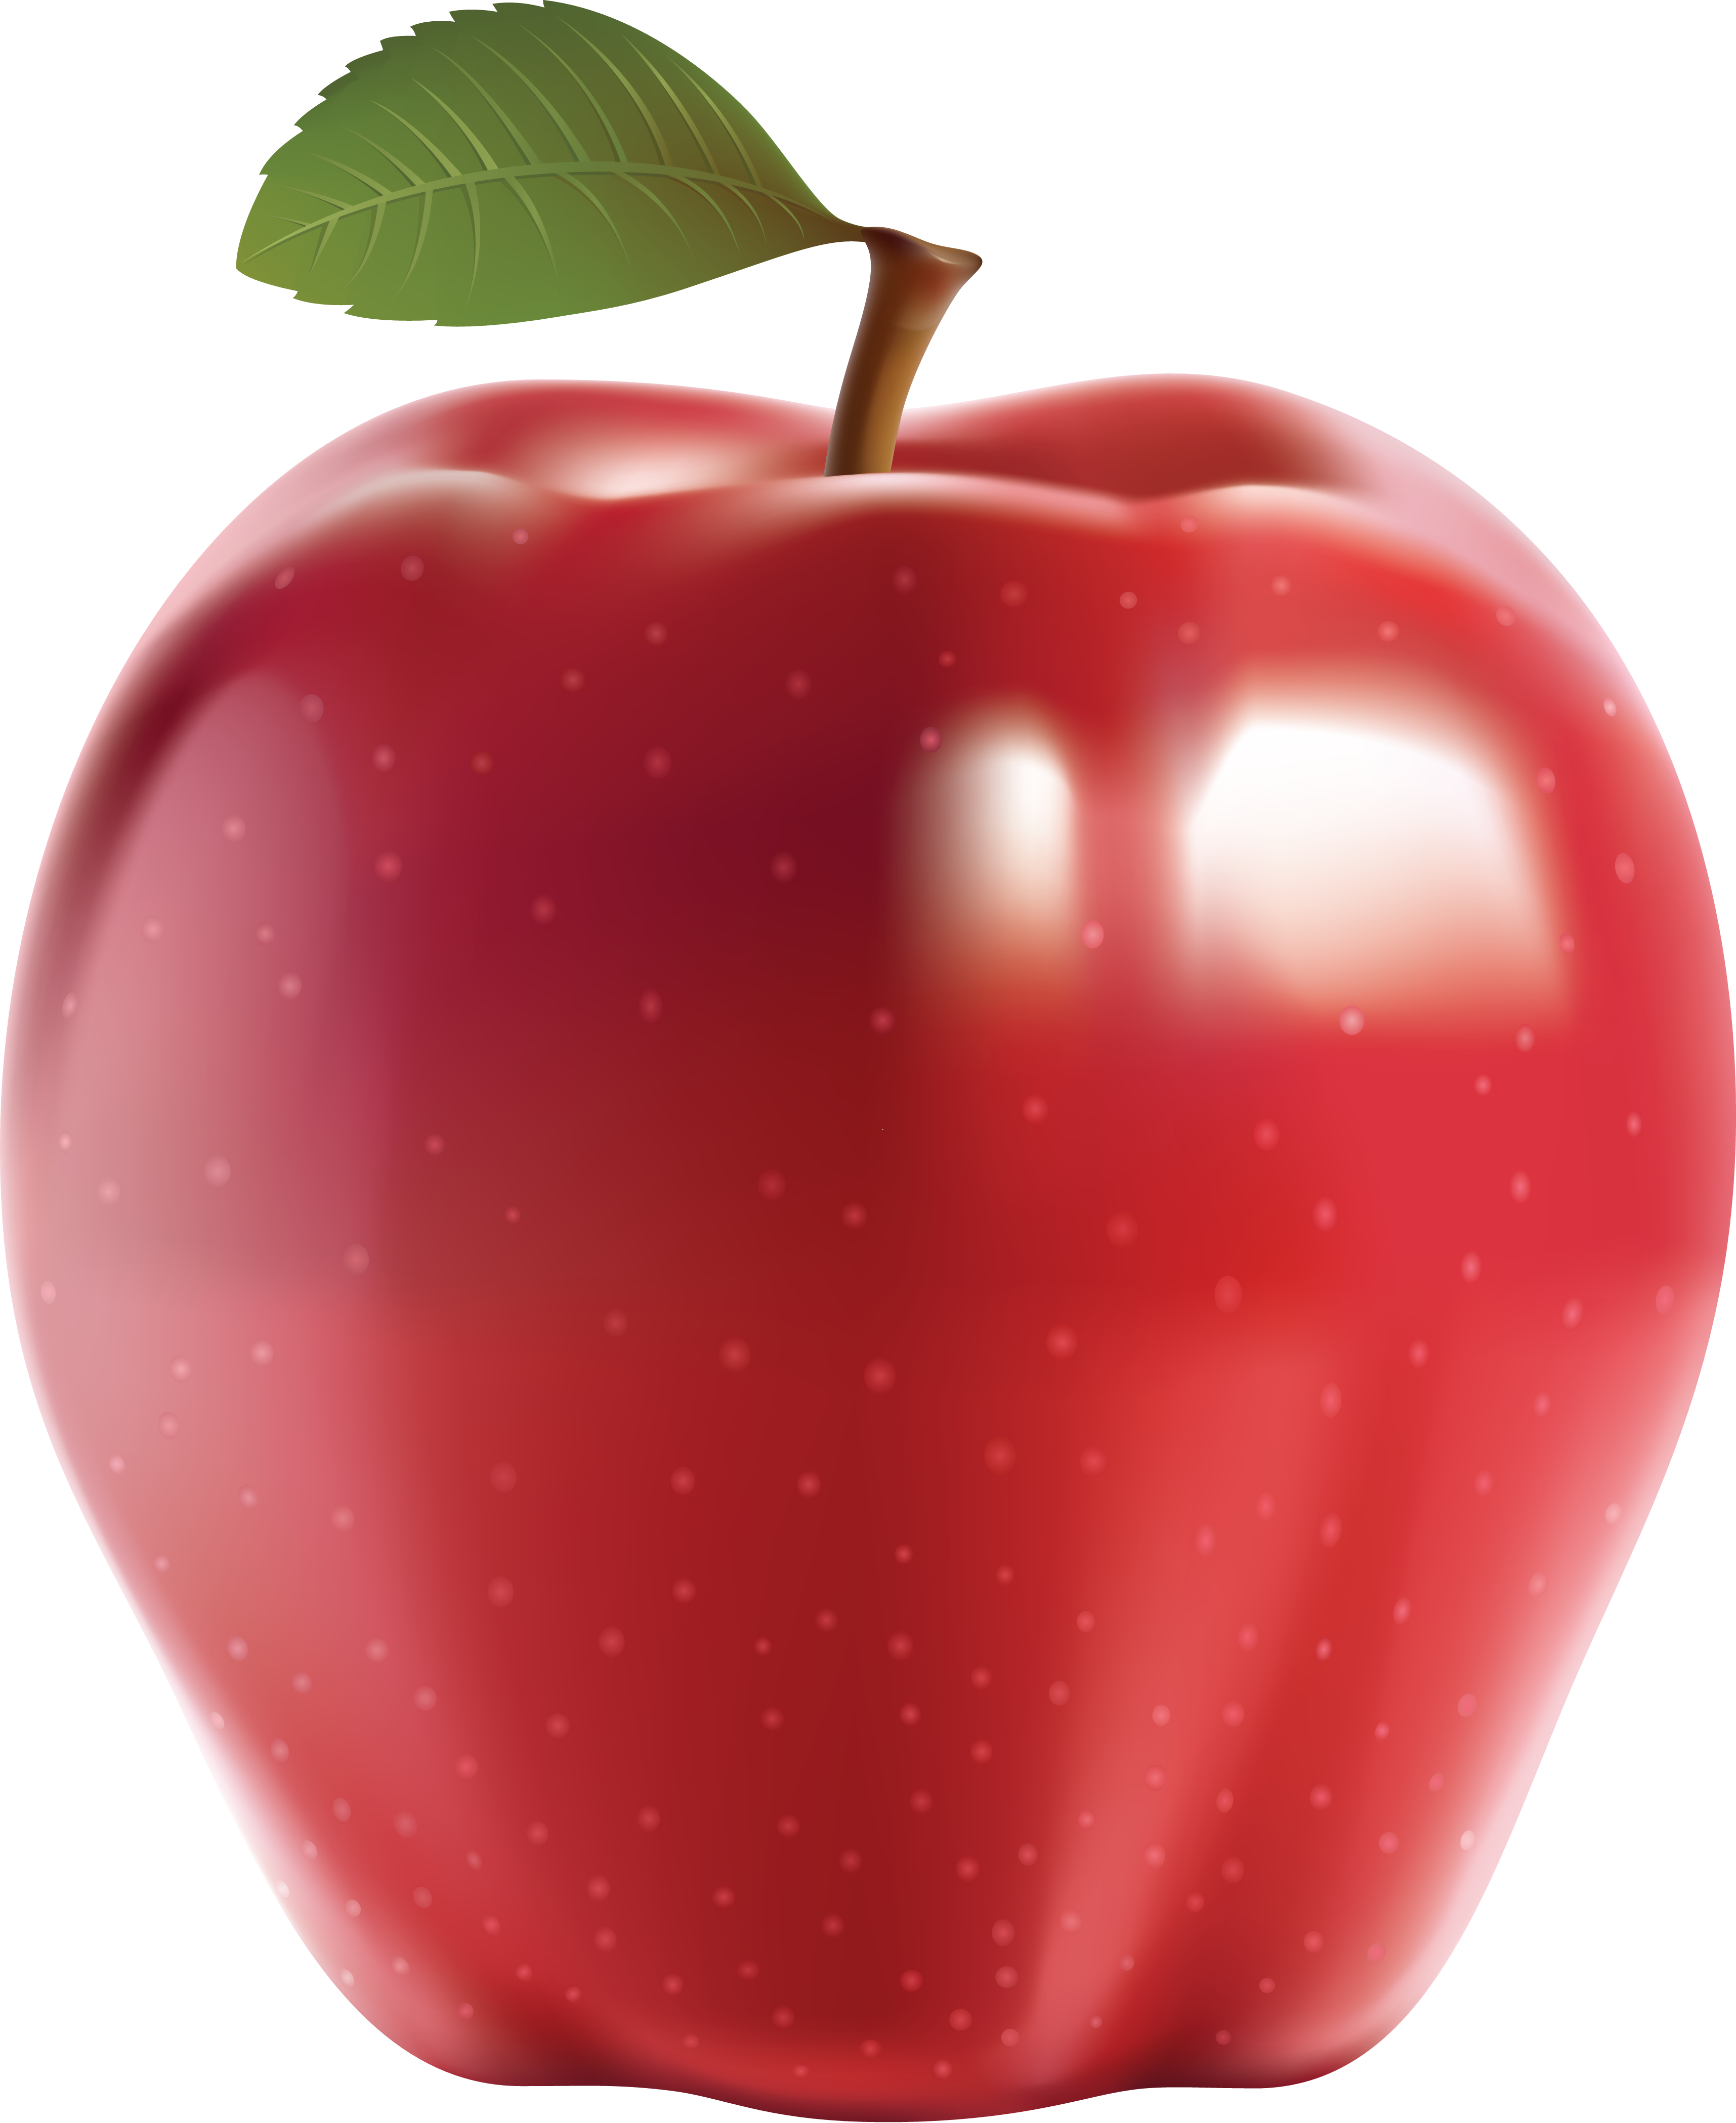 Büyük kırmızı elma